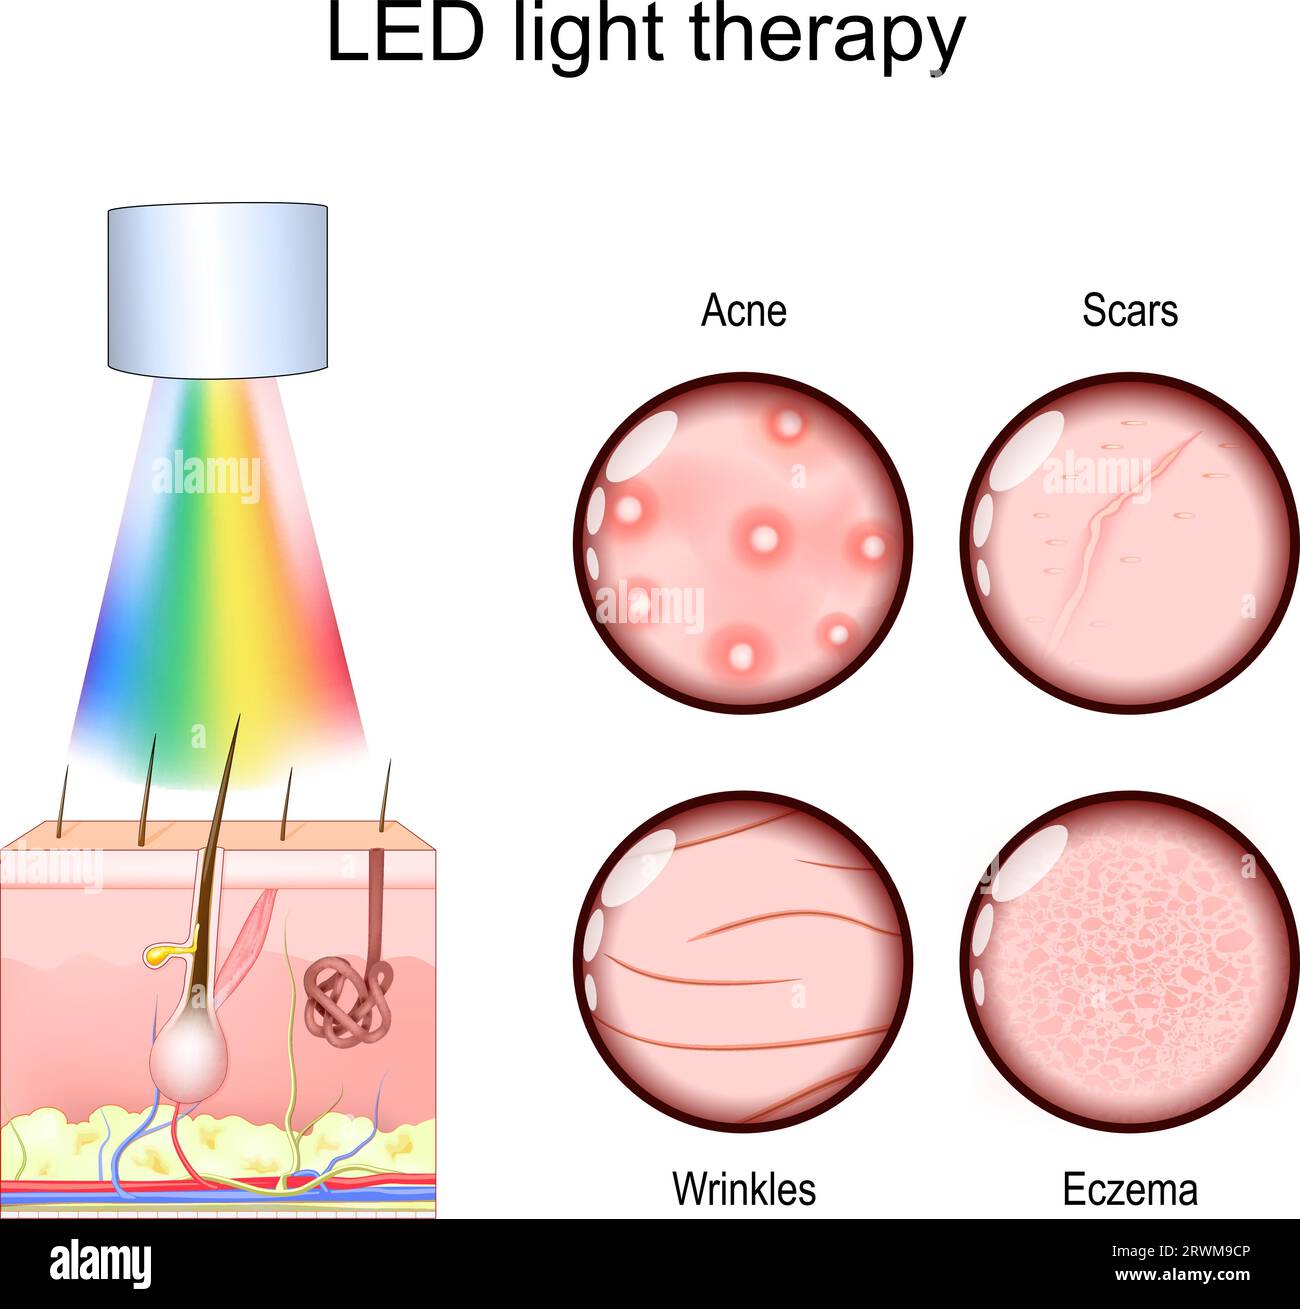 Terapia de luz LED para problemas relacionados con la piel, como el tratamiento del acné, las cicatrices y la reducción de arrugas, y el manejo del eczema. Fototerapia para rejuvenati de la piel Ilustración del Vector